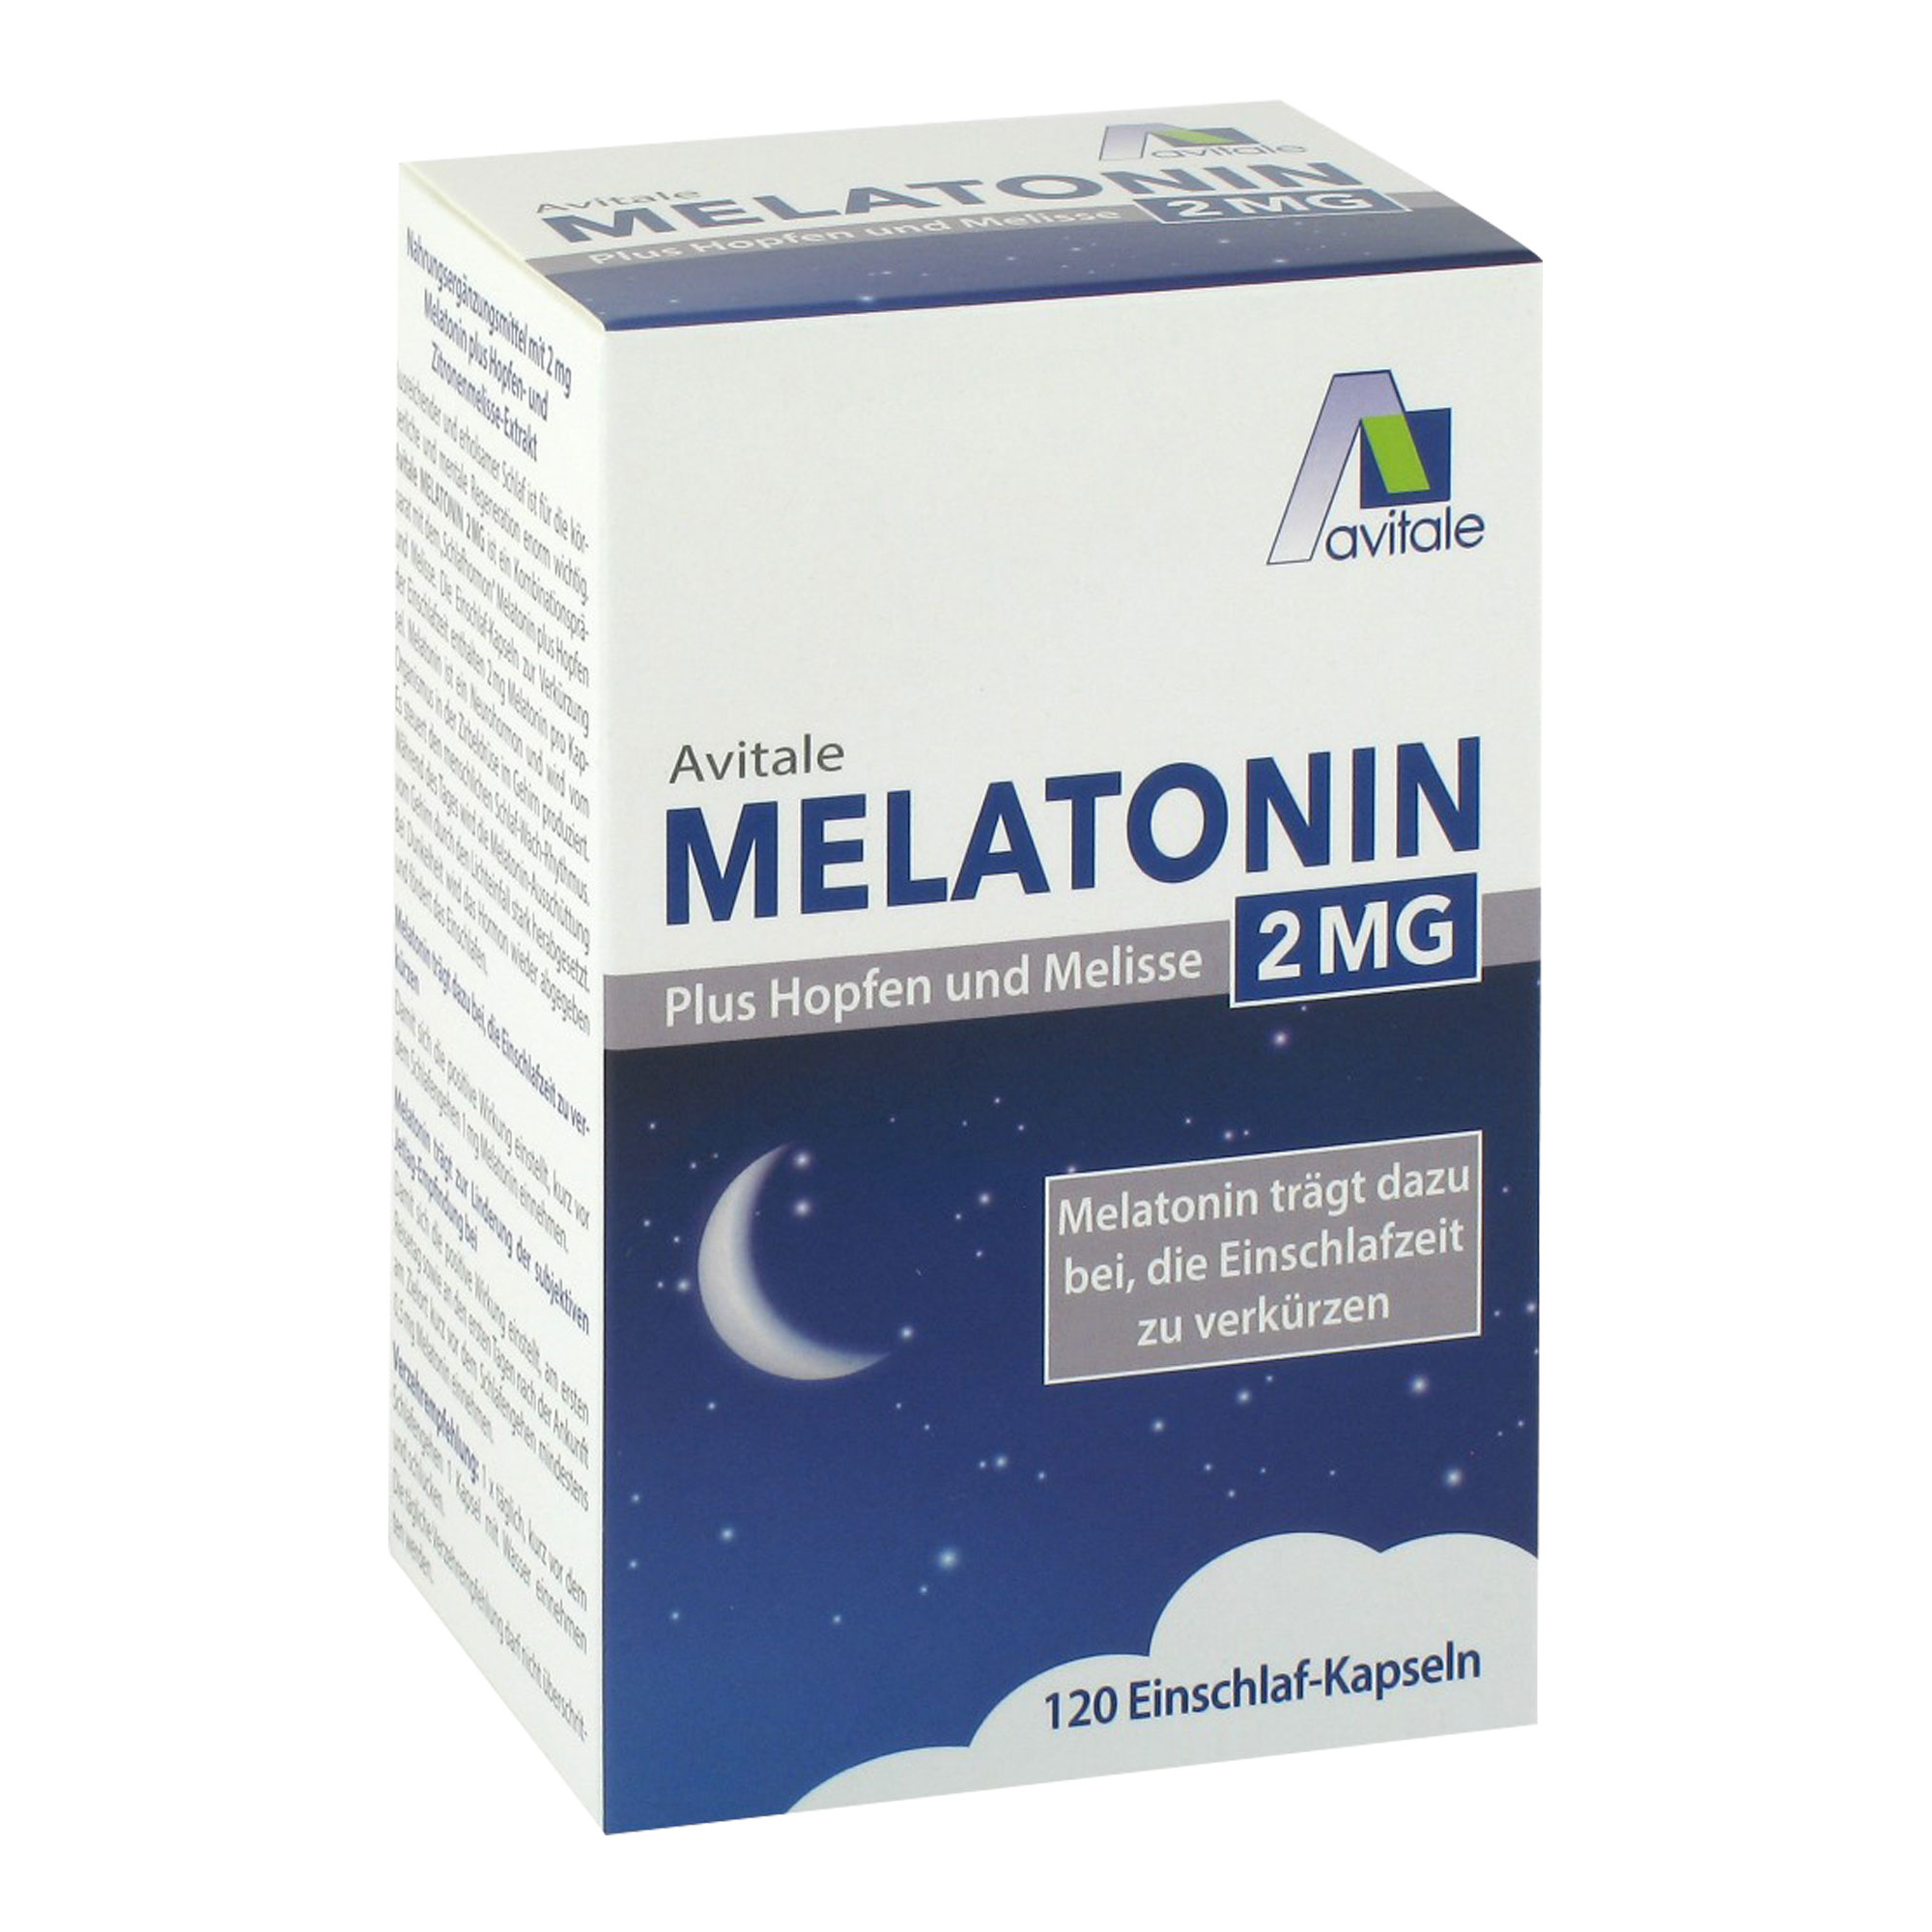 Nahrungsergänzungsmittel mit 2 mg Melatonin, Hopfen- und Zitronenmelisse-Extrakt.